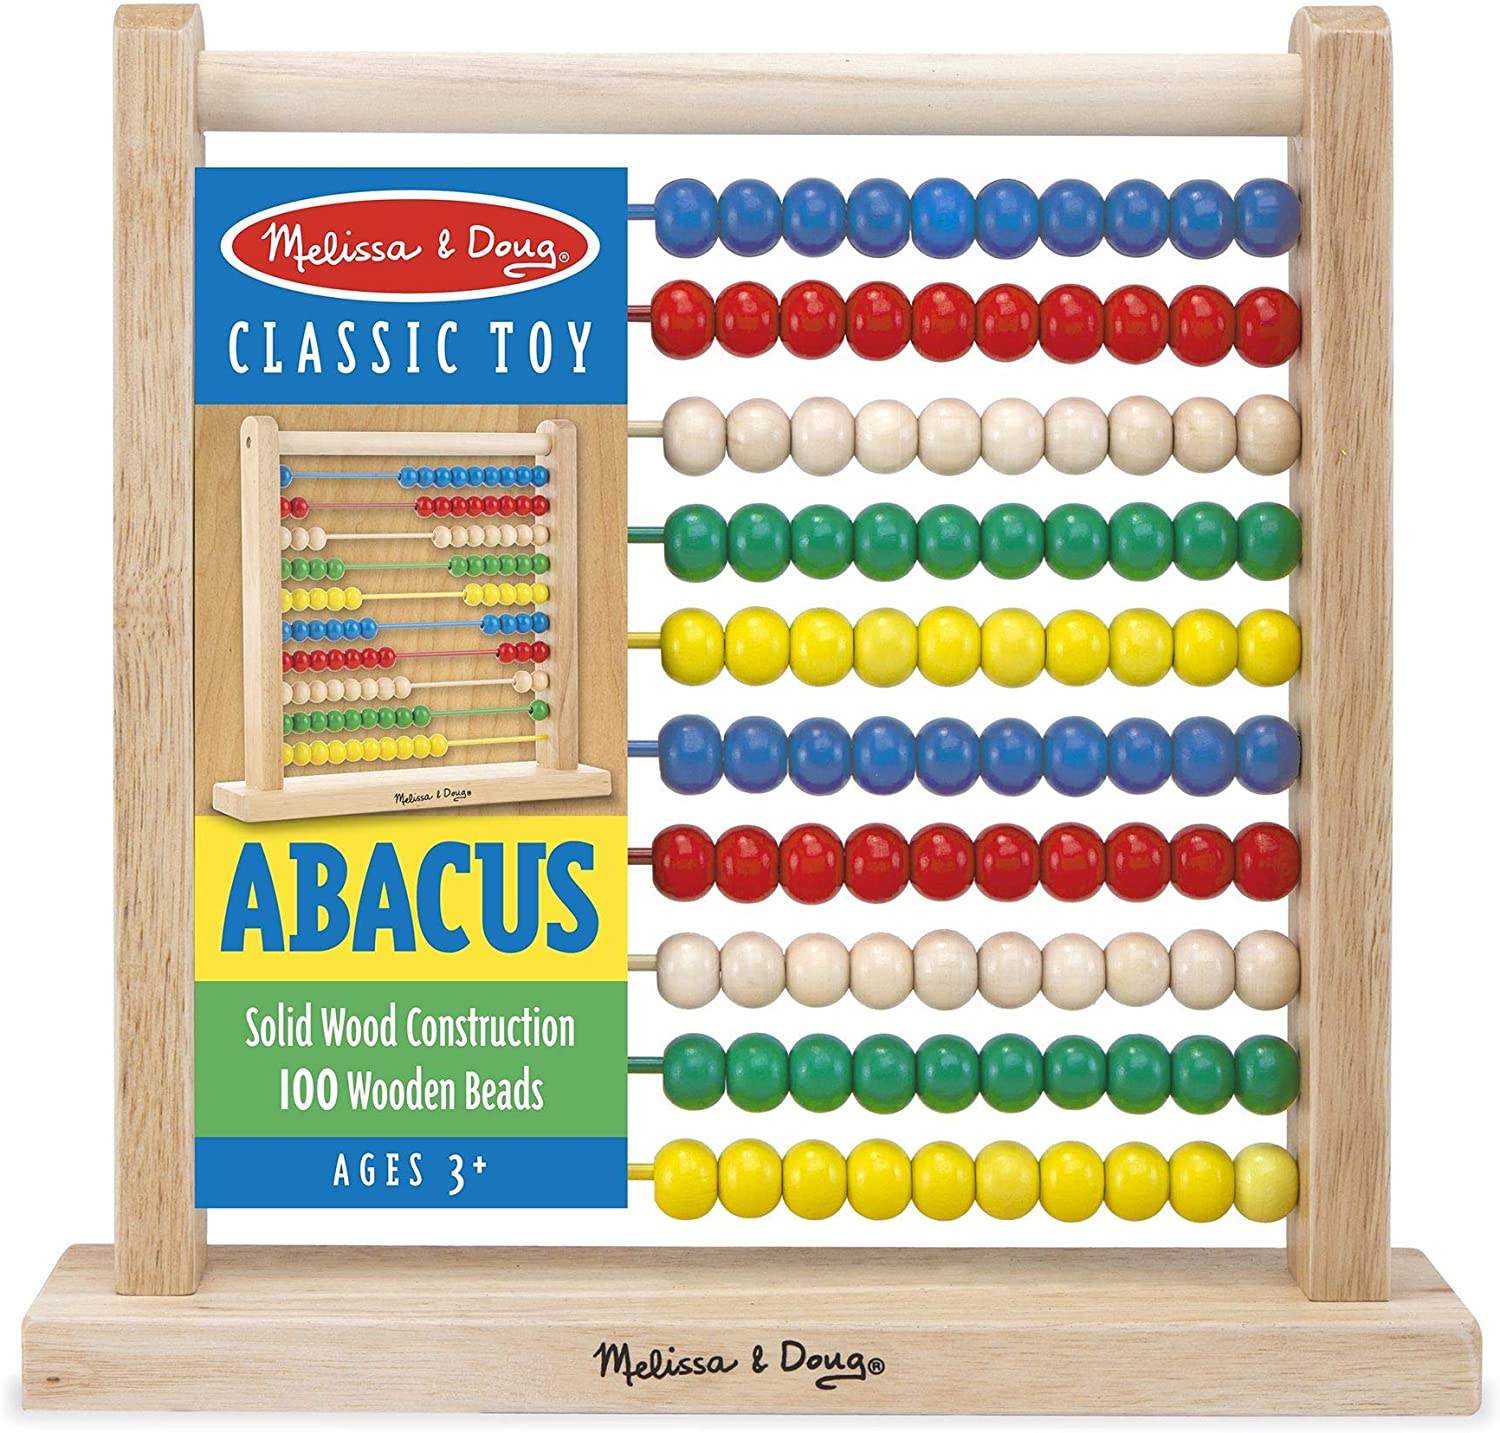 Abacus 100Wooden beads Melissa & Doug 3+